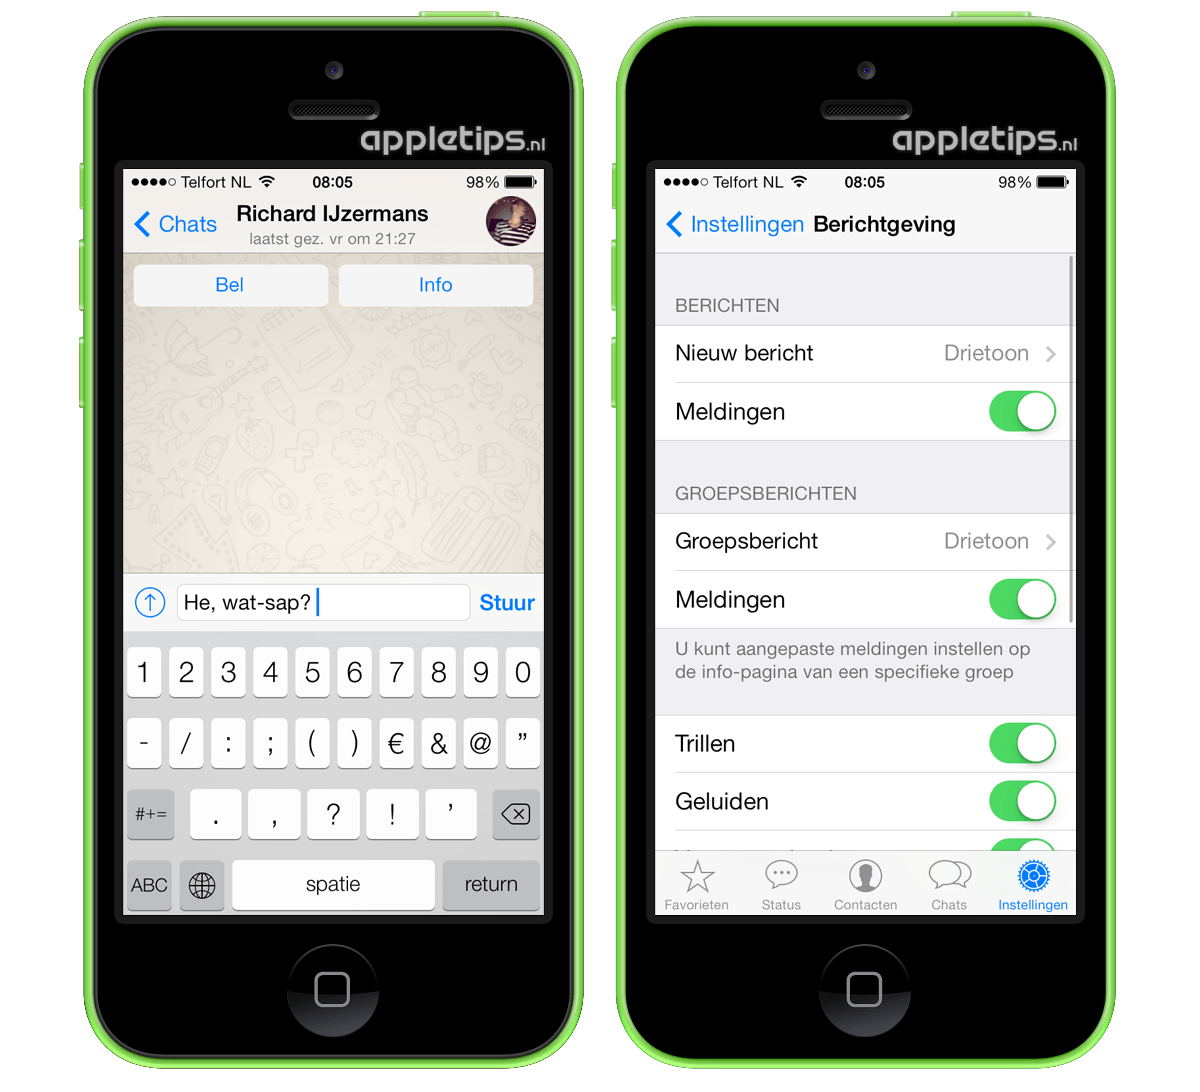 Download Whatsapp voor iOS 7 vanaf nu beschikbaar - appletips